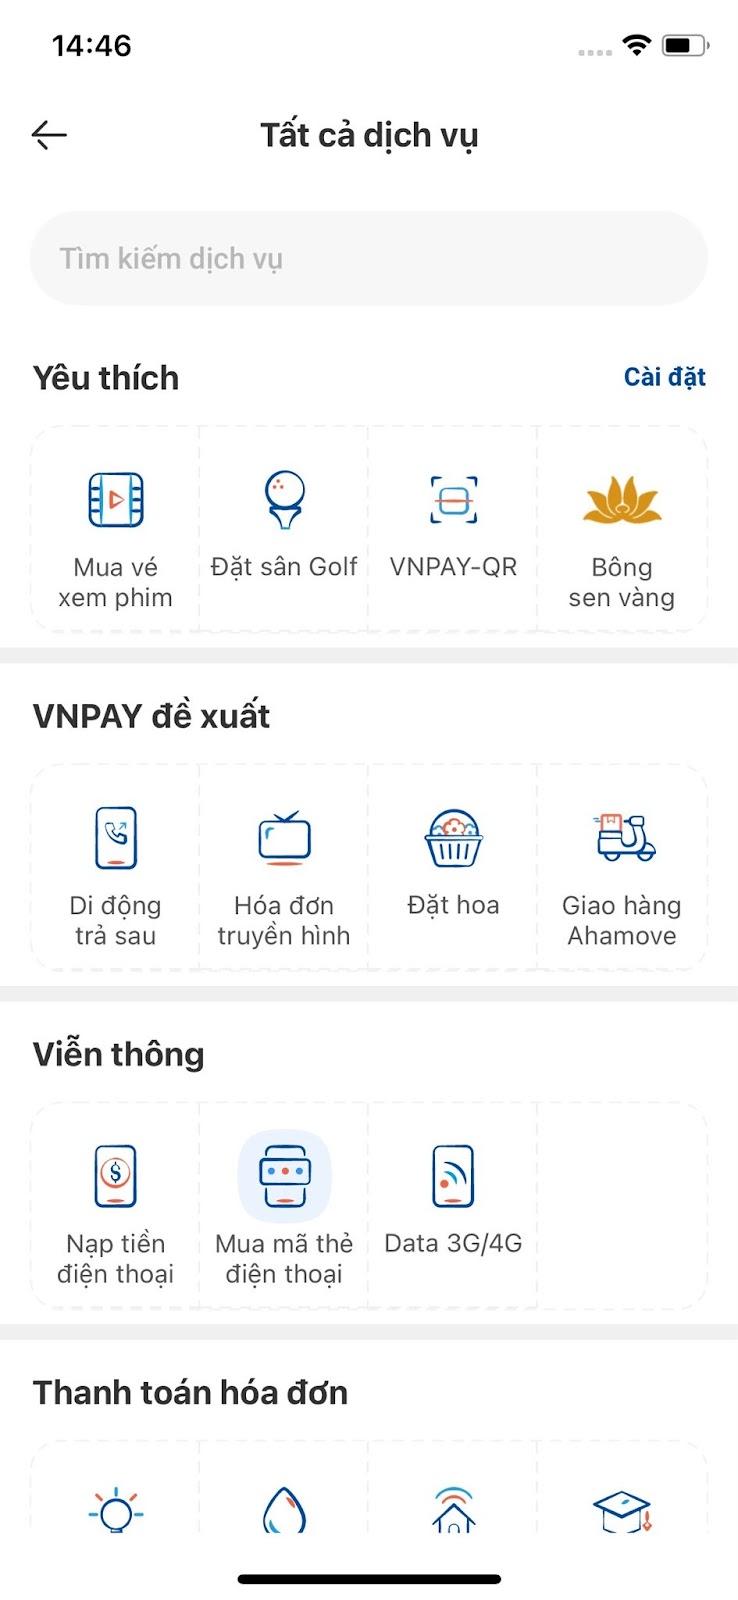 Để nạp thẻ Viettel online, bạn chọn tính năng Nạp tiền điện thoại trong phần Viễn thông